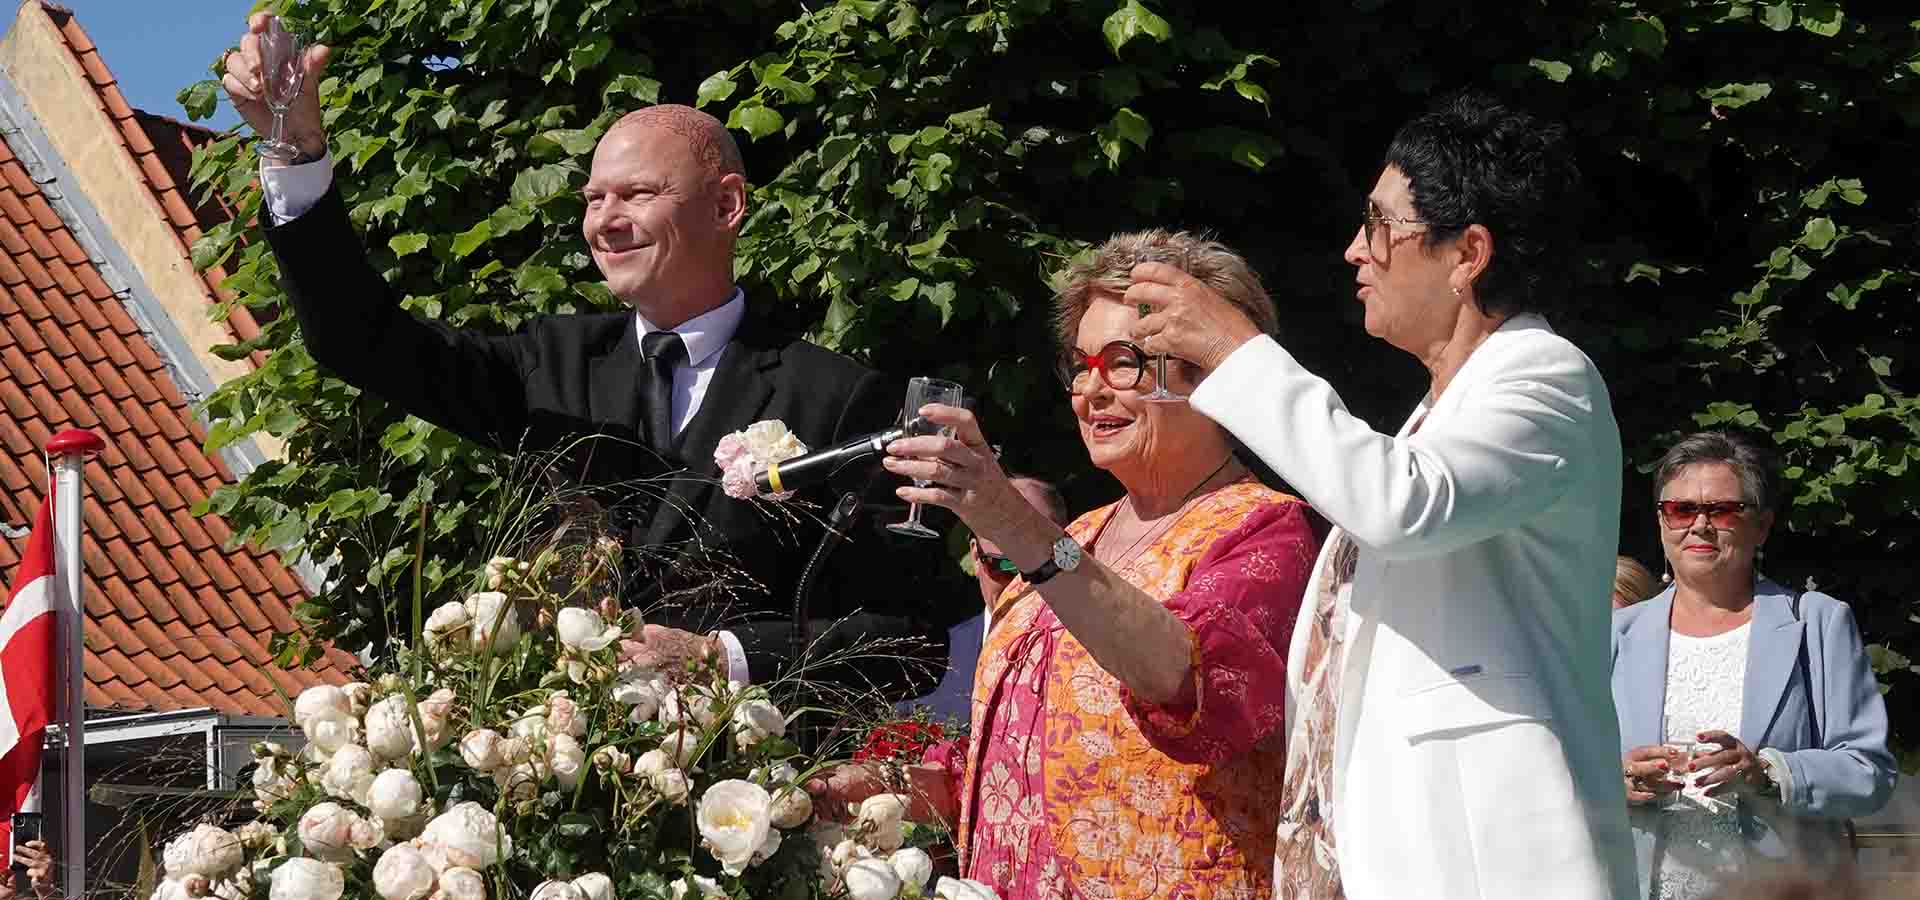 Jim Lyngvild. Ghita Nørby og Rosa Eskelund døber rosen Royal Viking